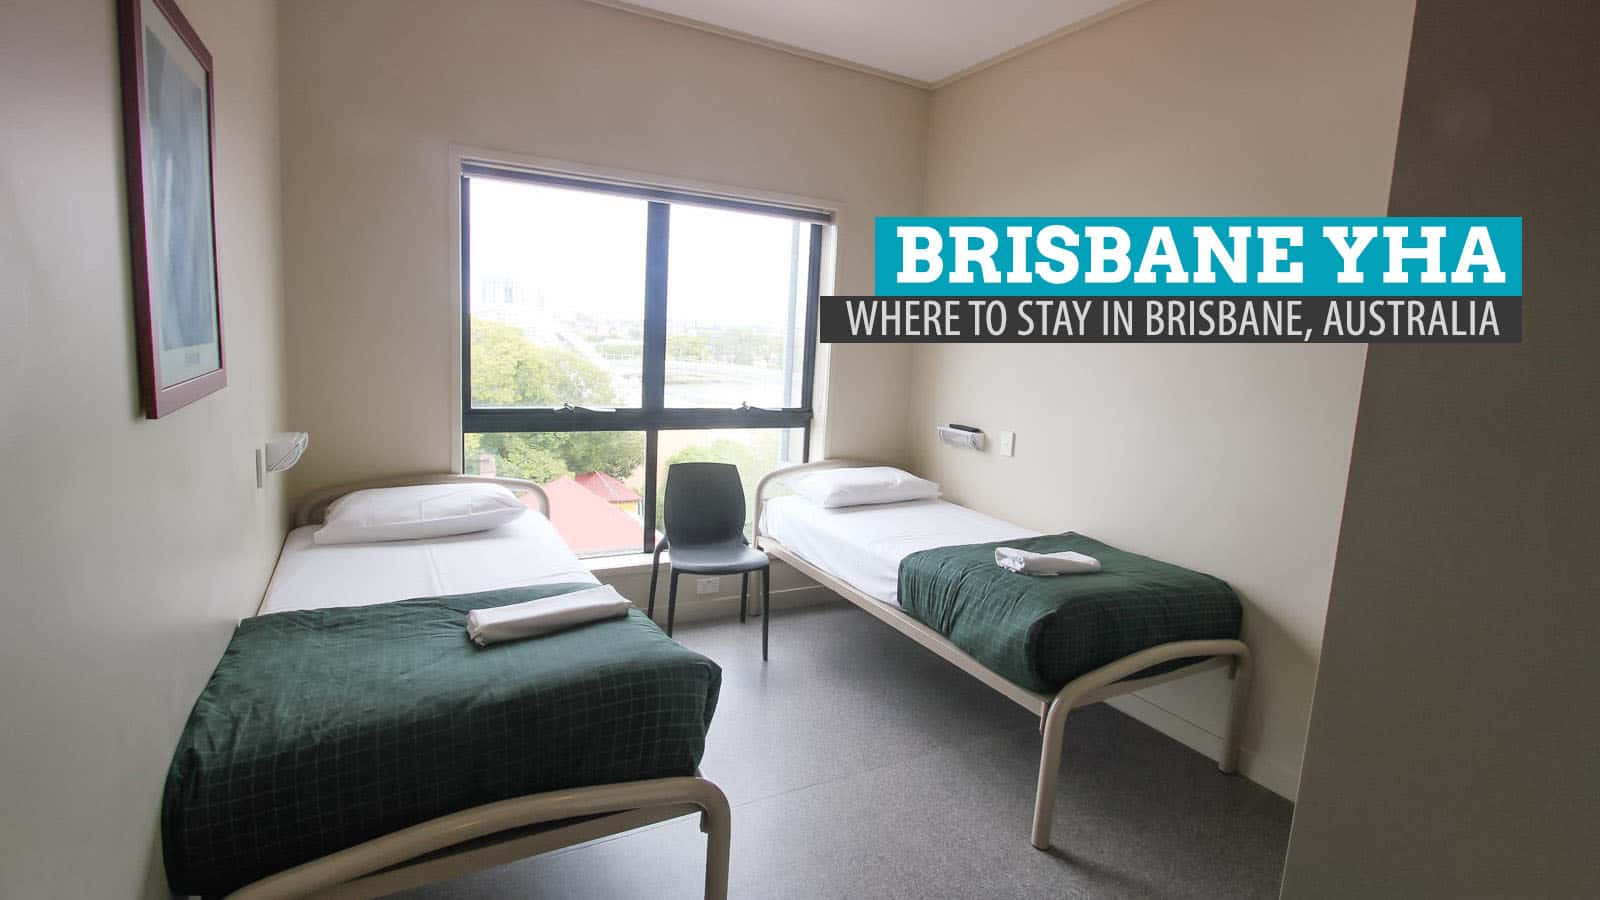 Brisbane City YHA: Where to Stay in Brisbane, Australia